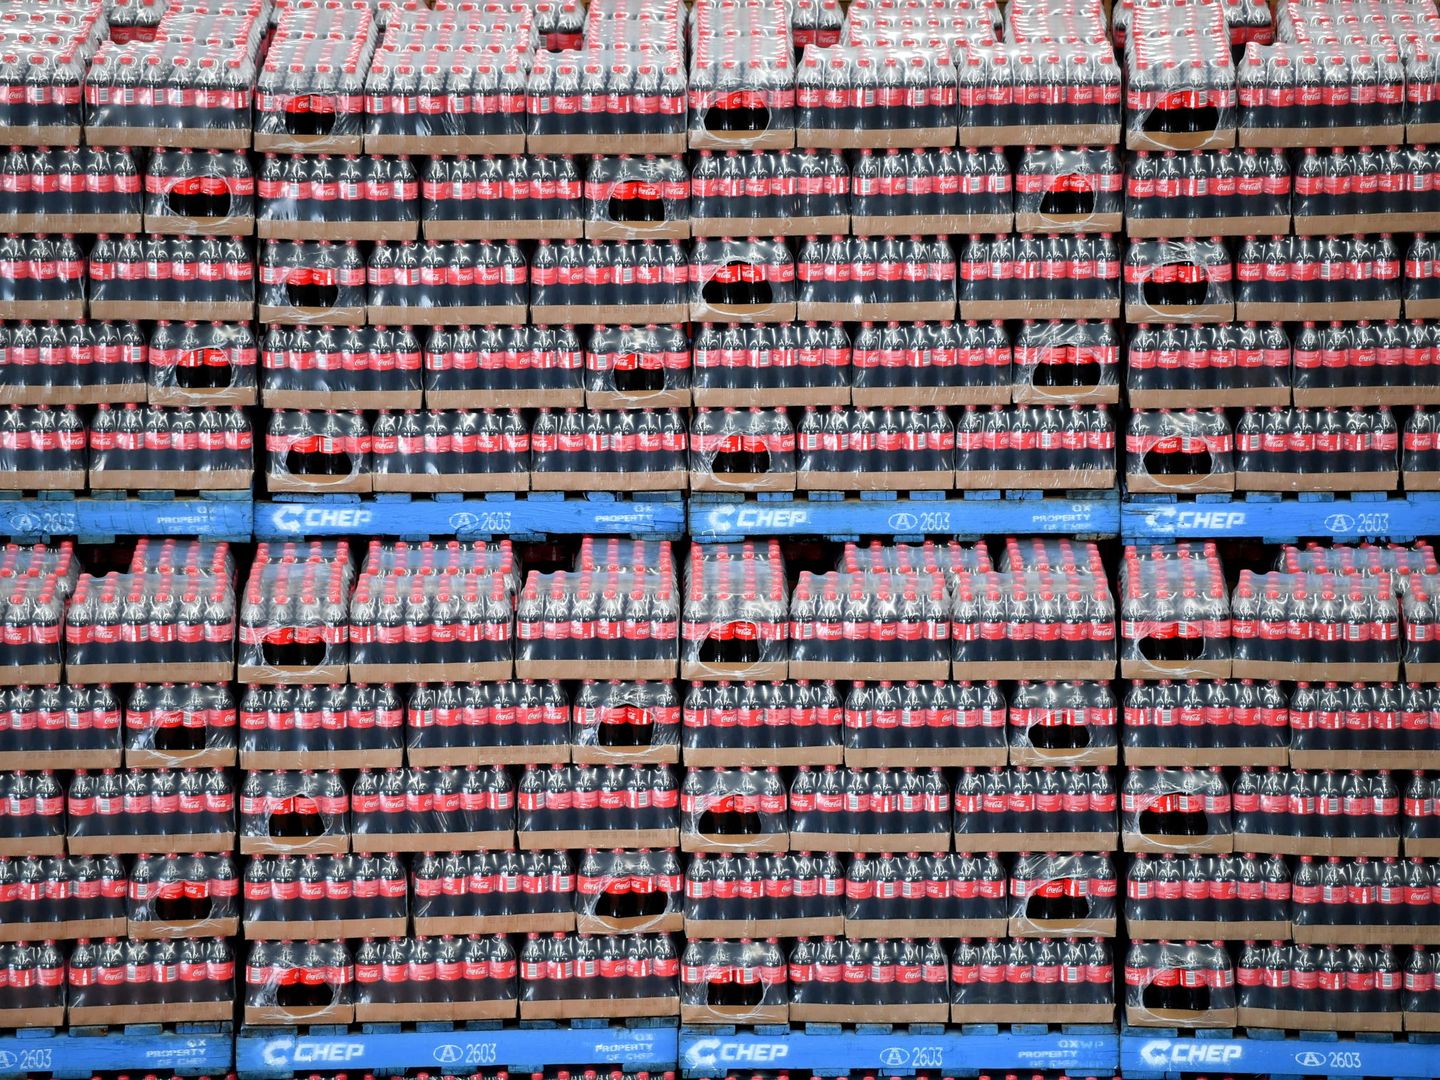 Vista de cajas de botellas de Coca-Cola en palets. (EFE)